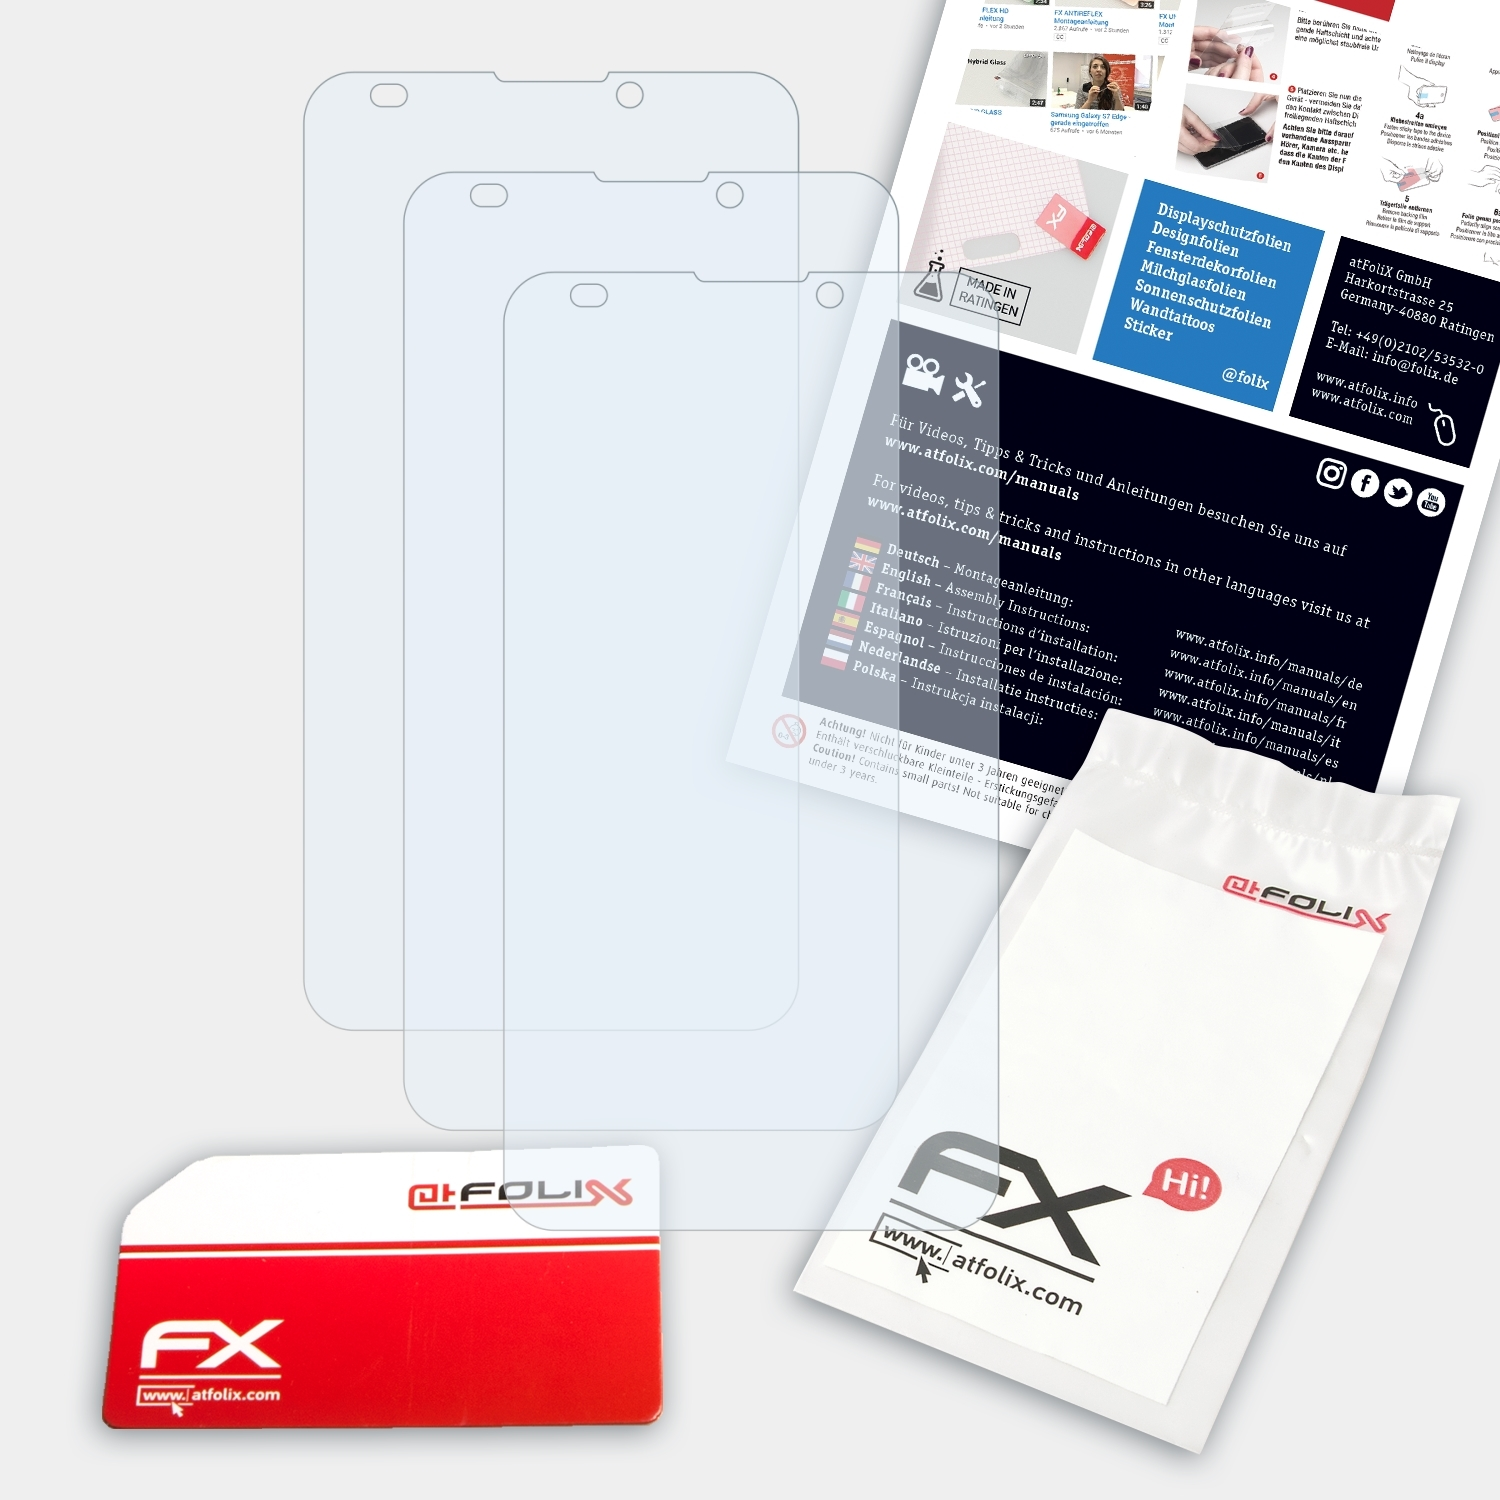 3x ATFOLIX FX-Clear E7) Nokia Displayschutz(für